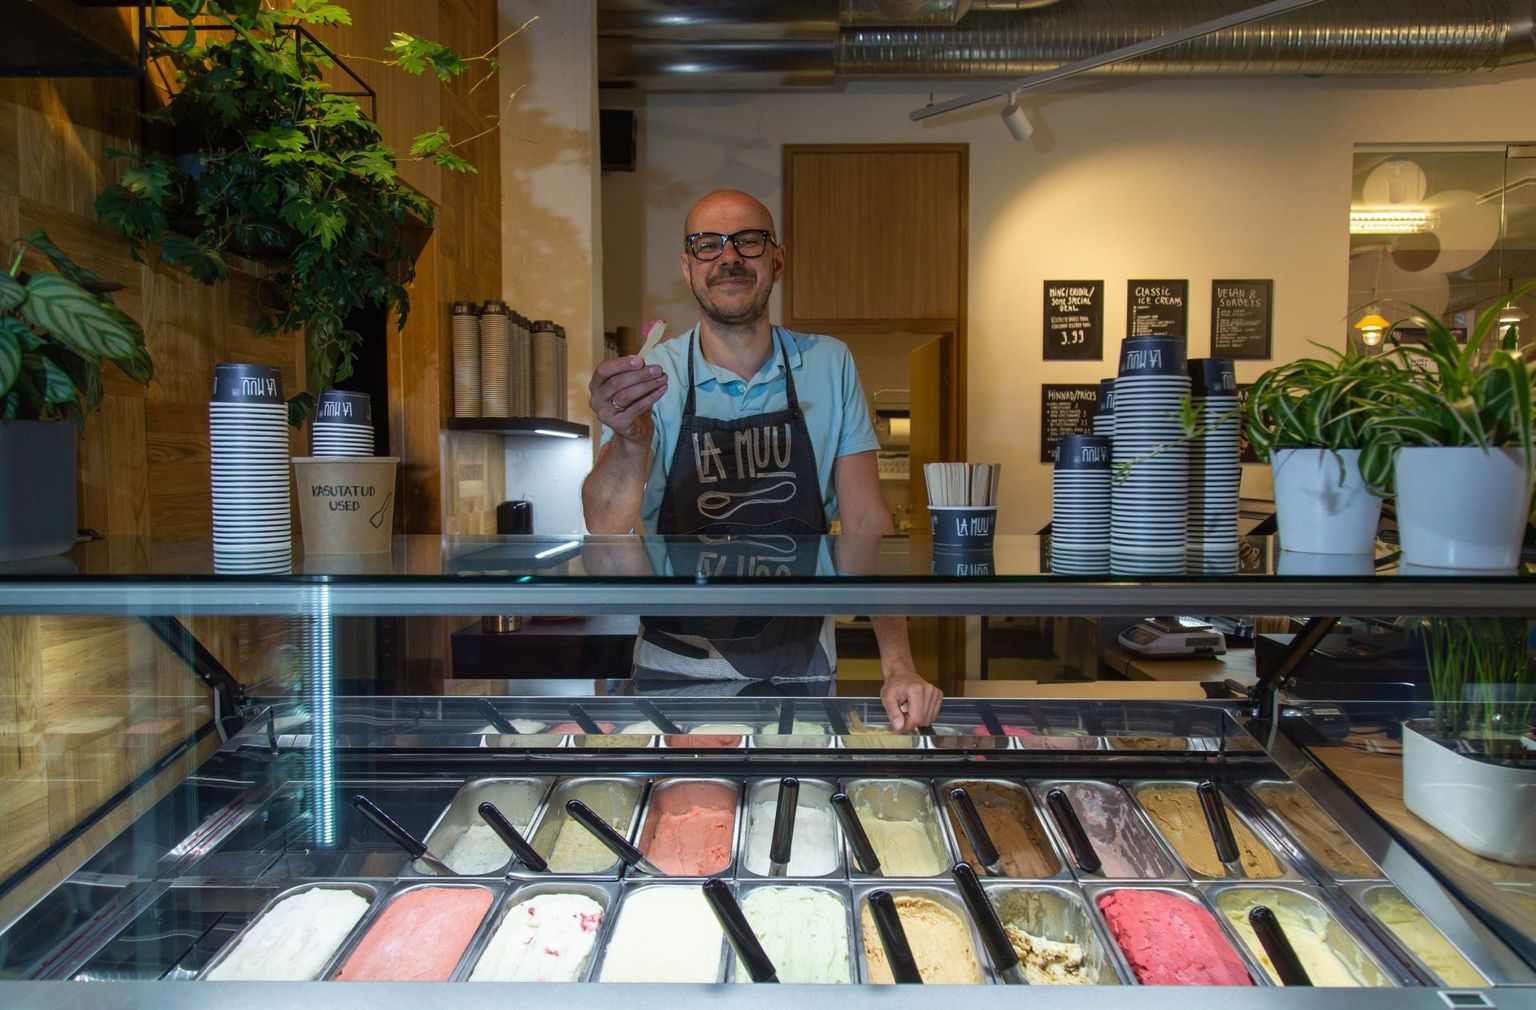 La Muu asutaja Rasmus Raski sõnul oli esimese kohviku avamine Viru keskuses viga, kuid kolm aastat hiljem avatud Telliskivi jäätisekohvik töötab.